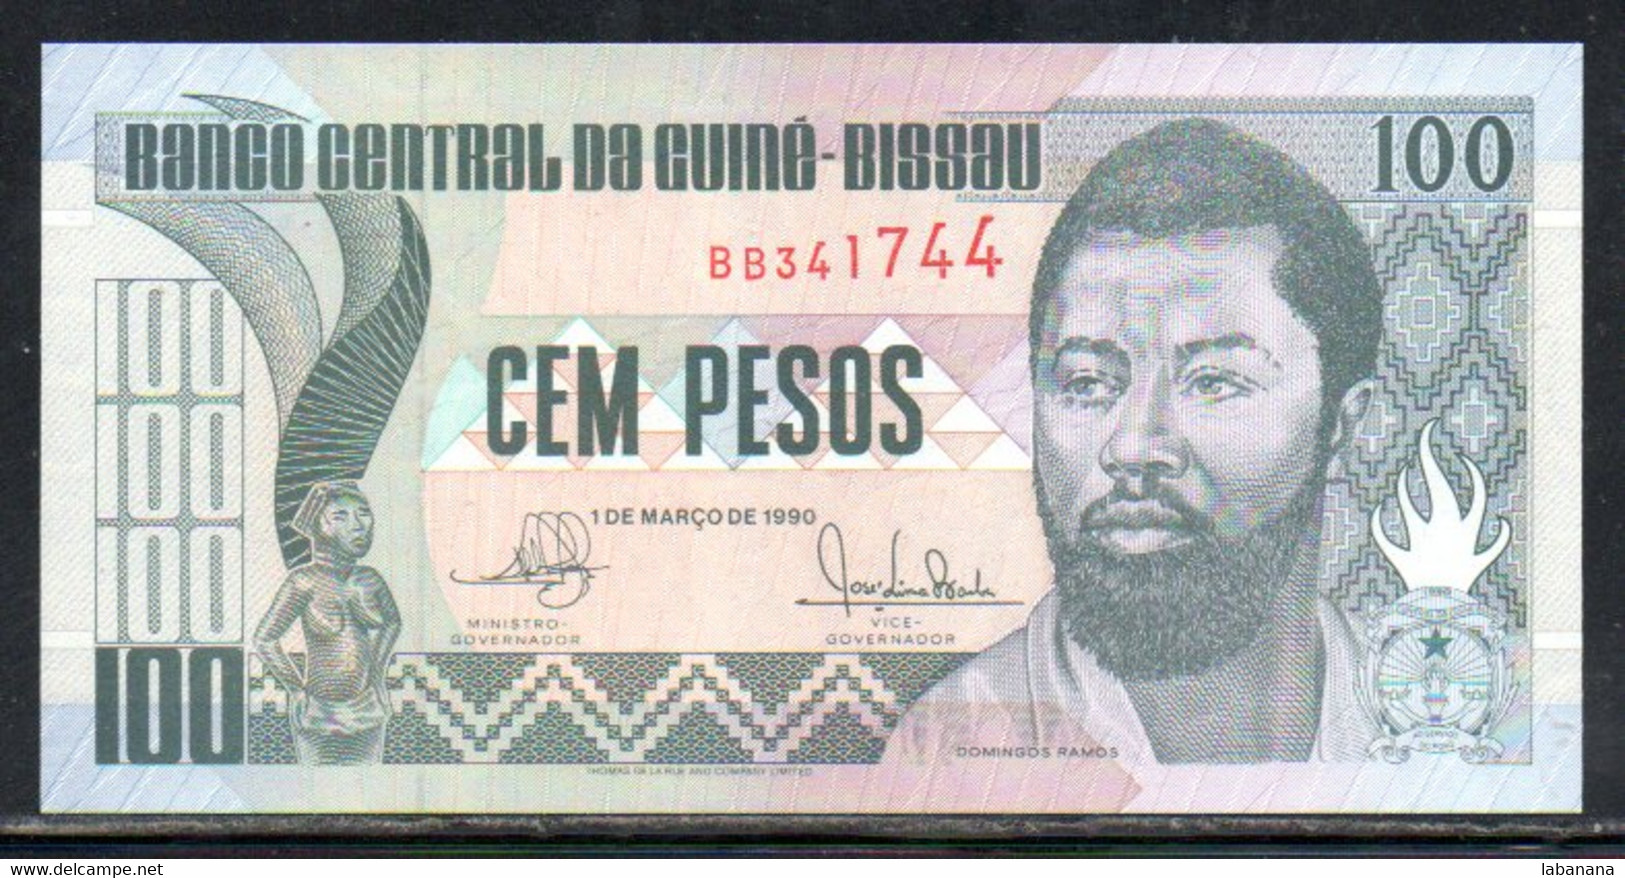 659-Guinée-Bissau 100 Pesos 1990 BB341 Neuf/unc - Guinea-Bissau